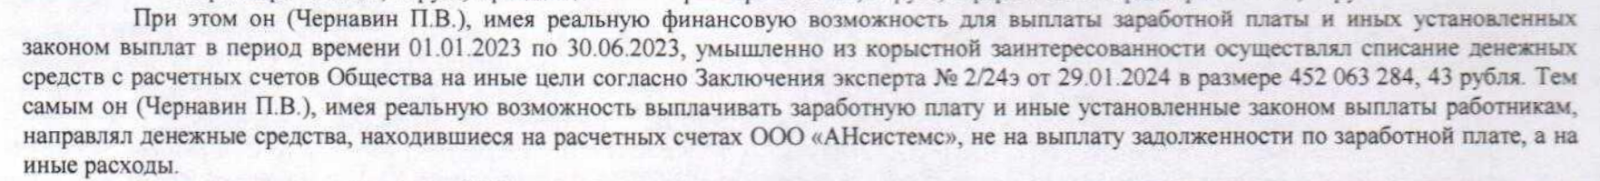 Обмануть сотрудников на 160 млн рублей и отделаться штрафом: гайд от IT компании из Сколково - 6